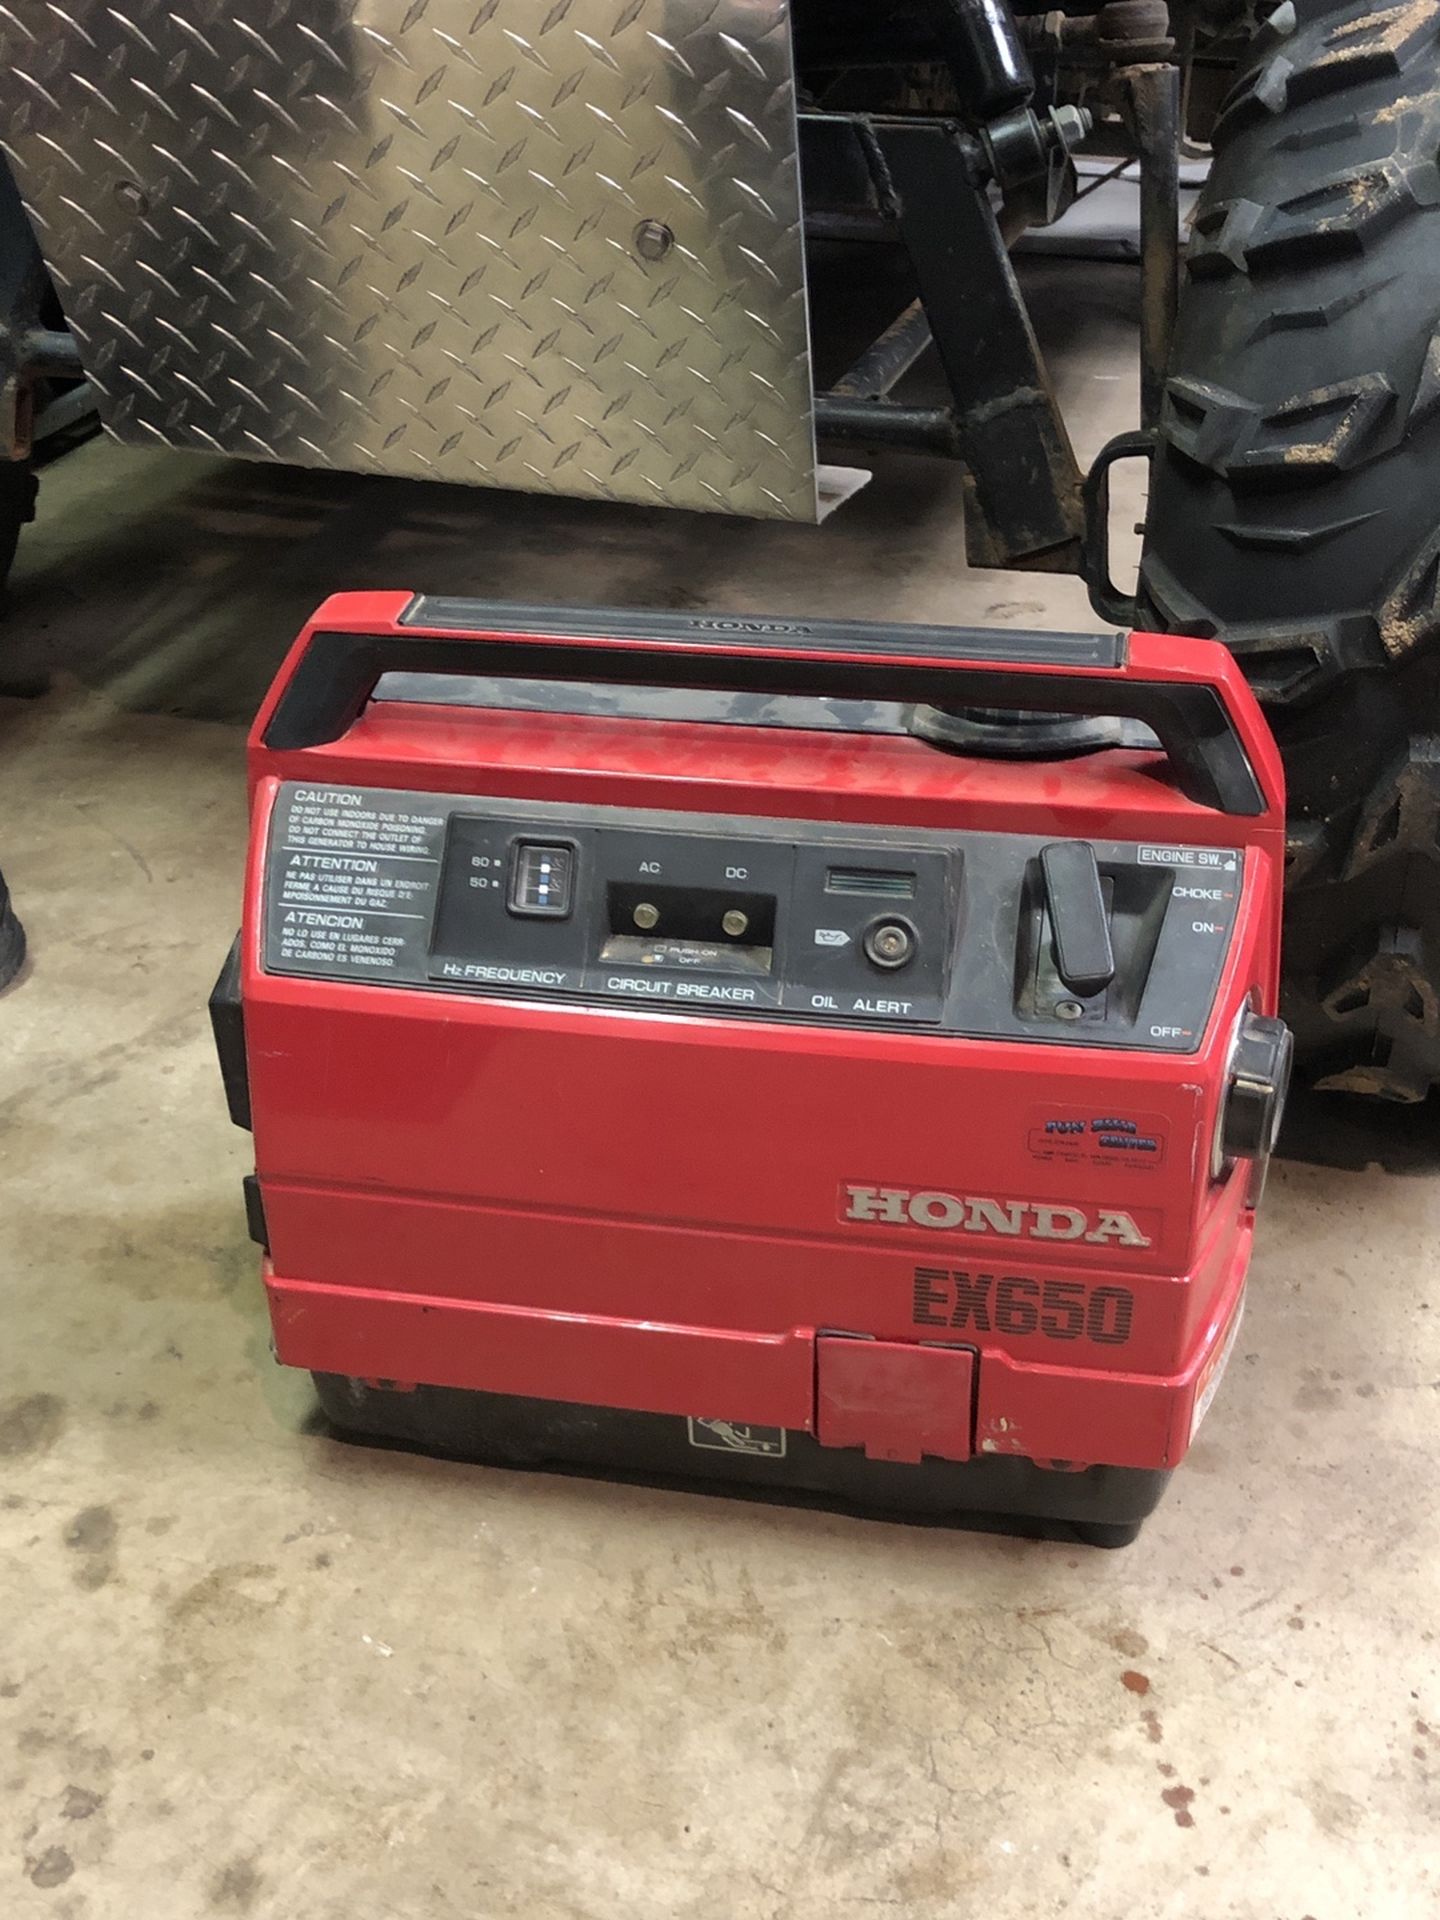 Honda EX650 Generator Suitcase Style